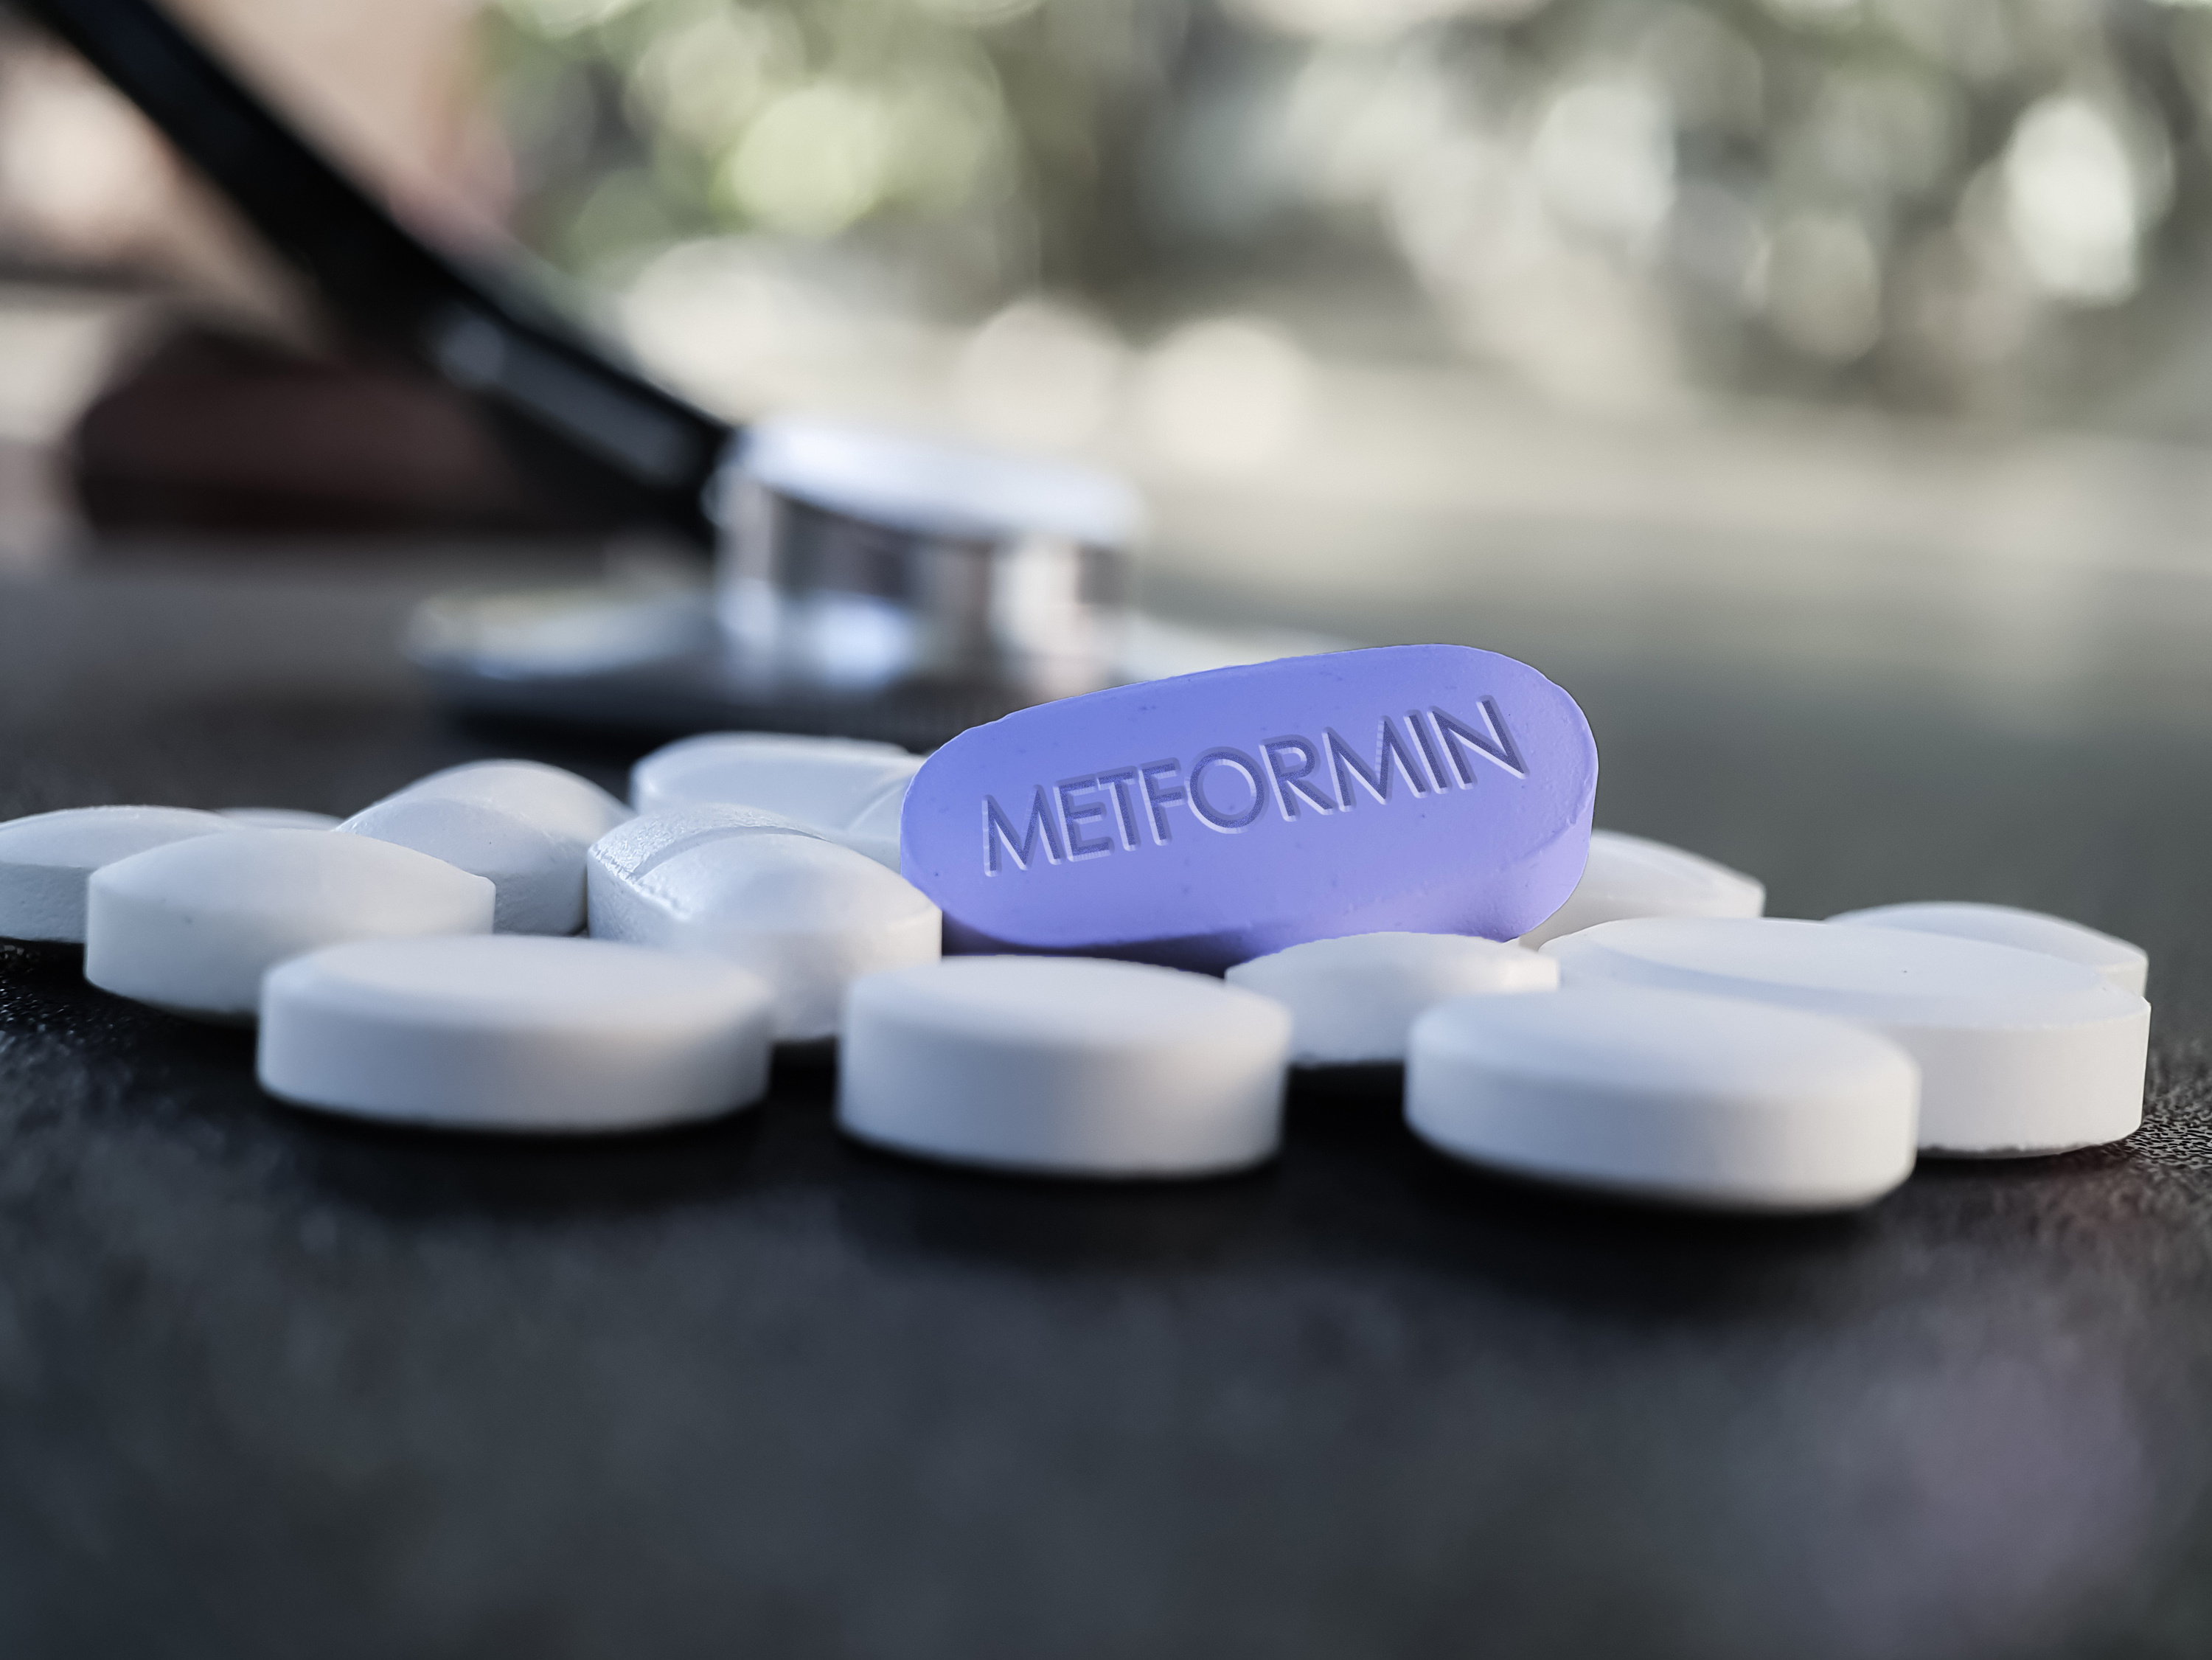 La metformine, un antidiabétique qui pourrait prévenir le Covid long ? © Soni's, Adobe Stock